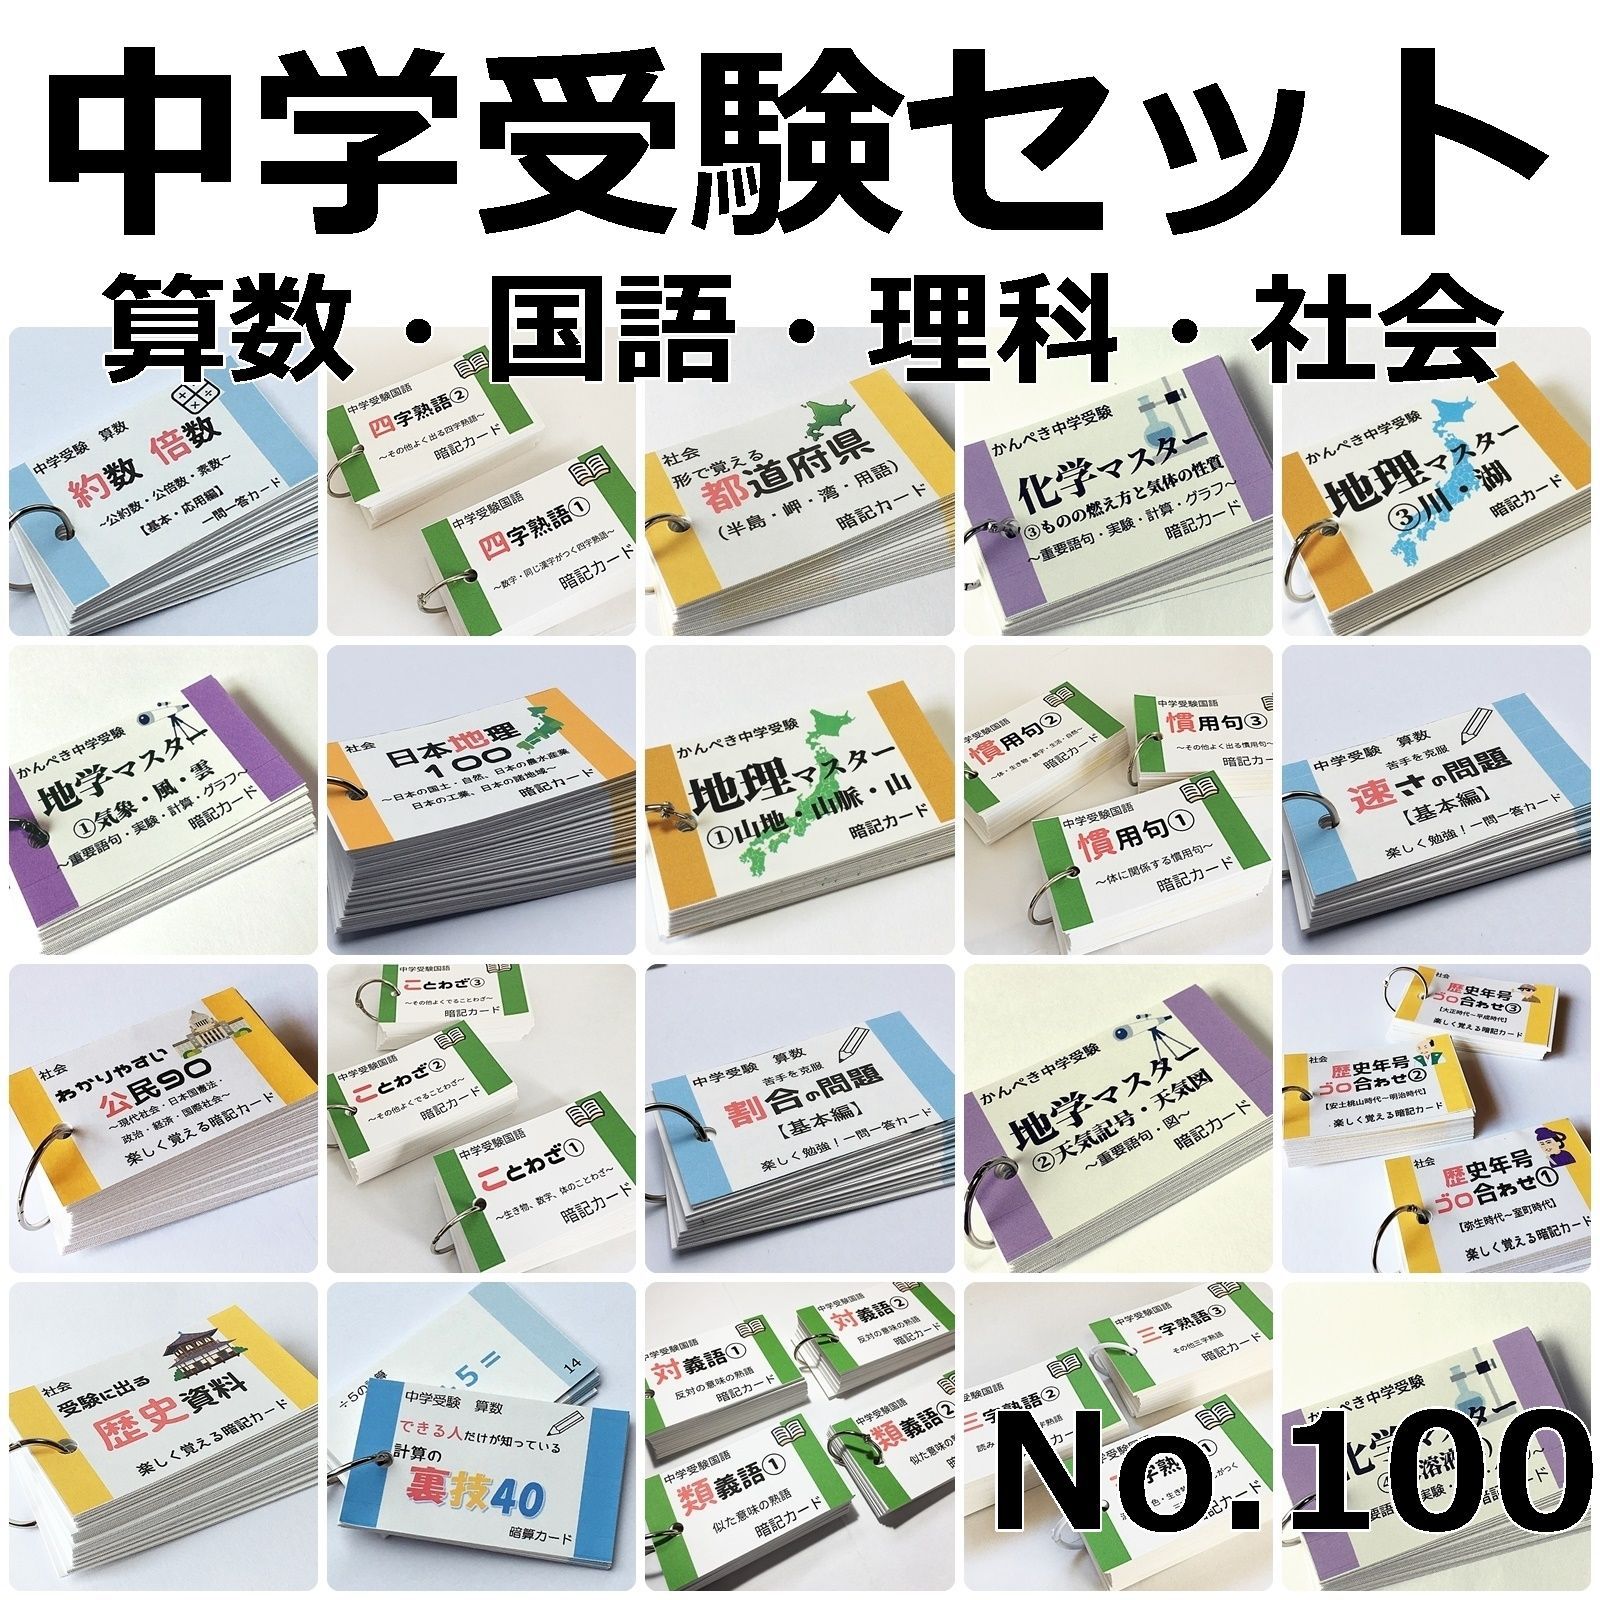 ○【100】中学受験 算数・国語・理科・社会 暗記カードセット 中学入試 